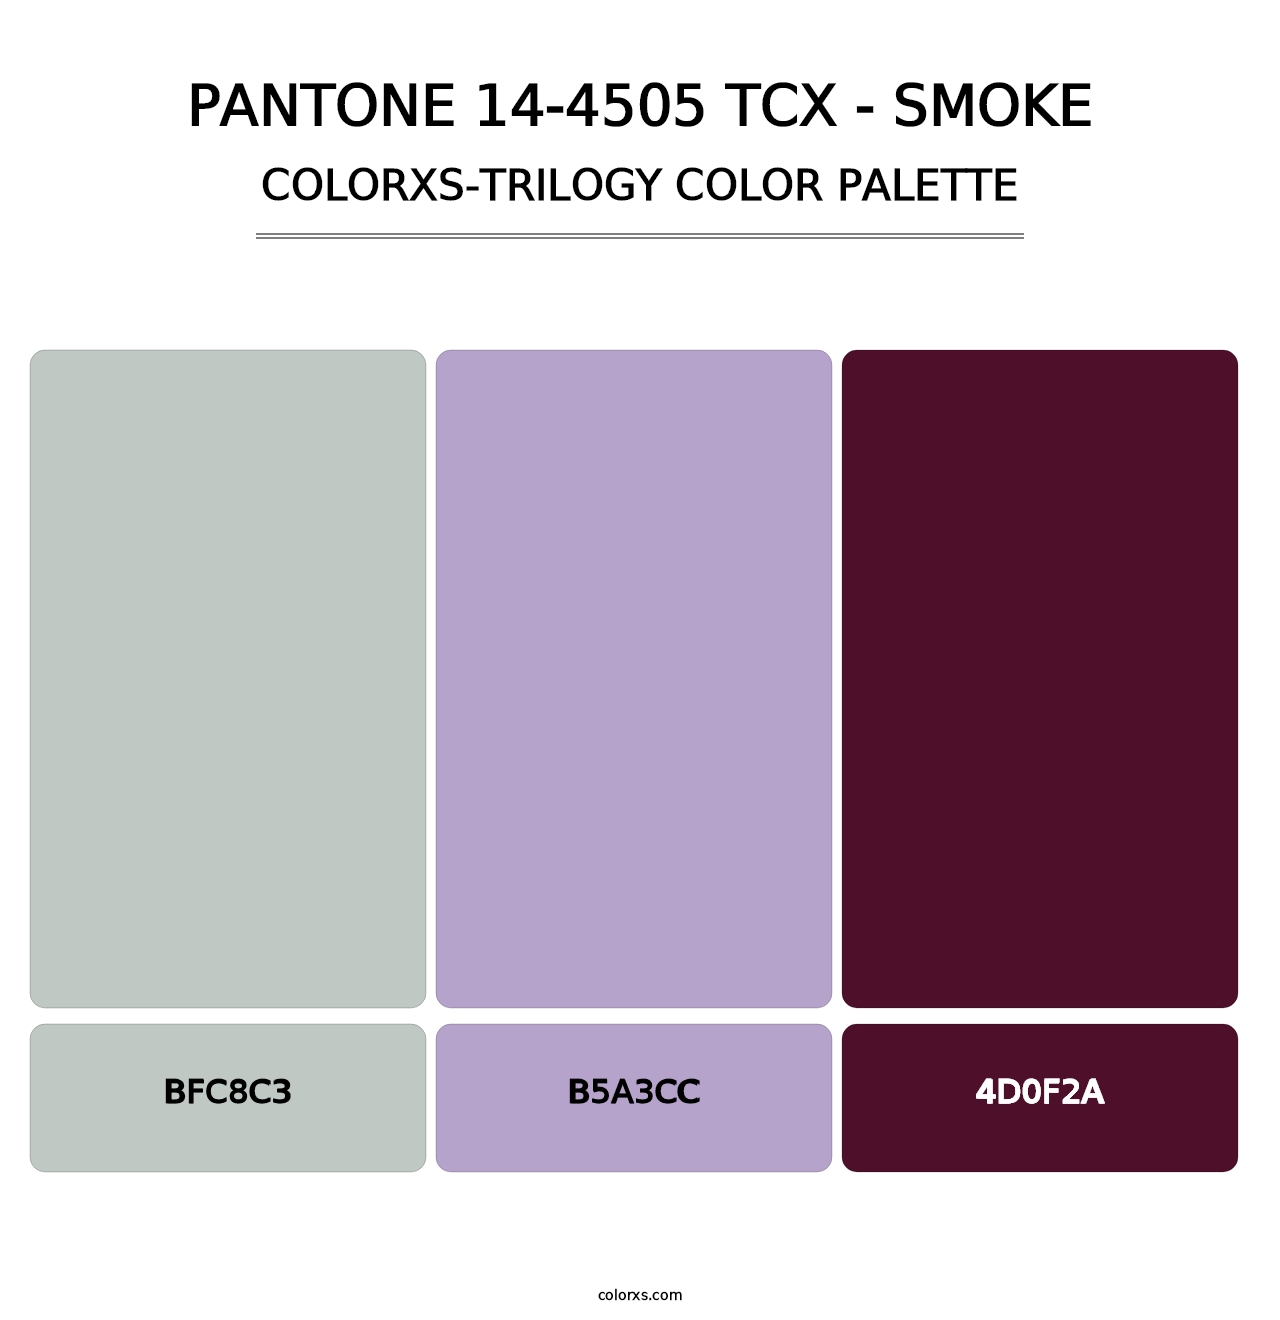 PANTONE 14-4505 TCX - Smoke - Colorxs Trilogy Palette